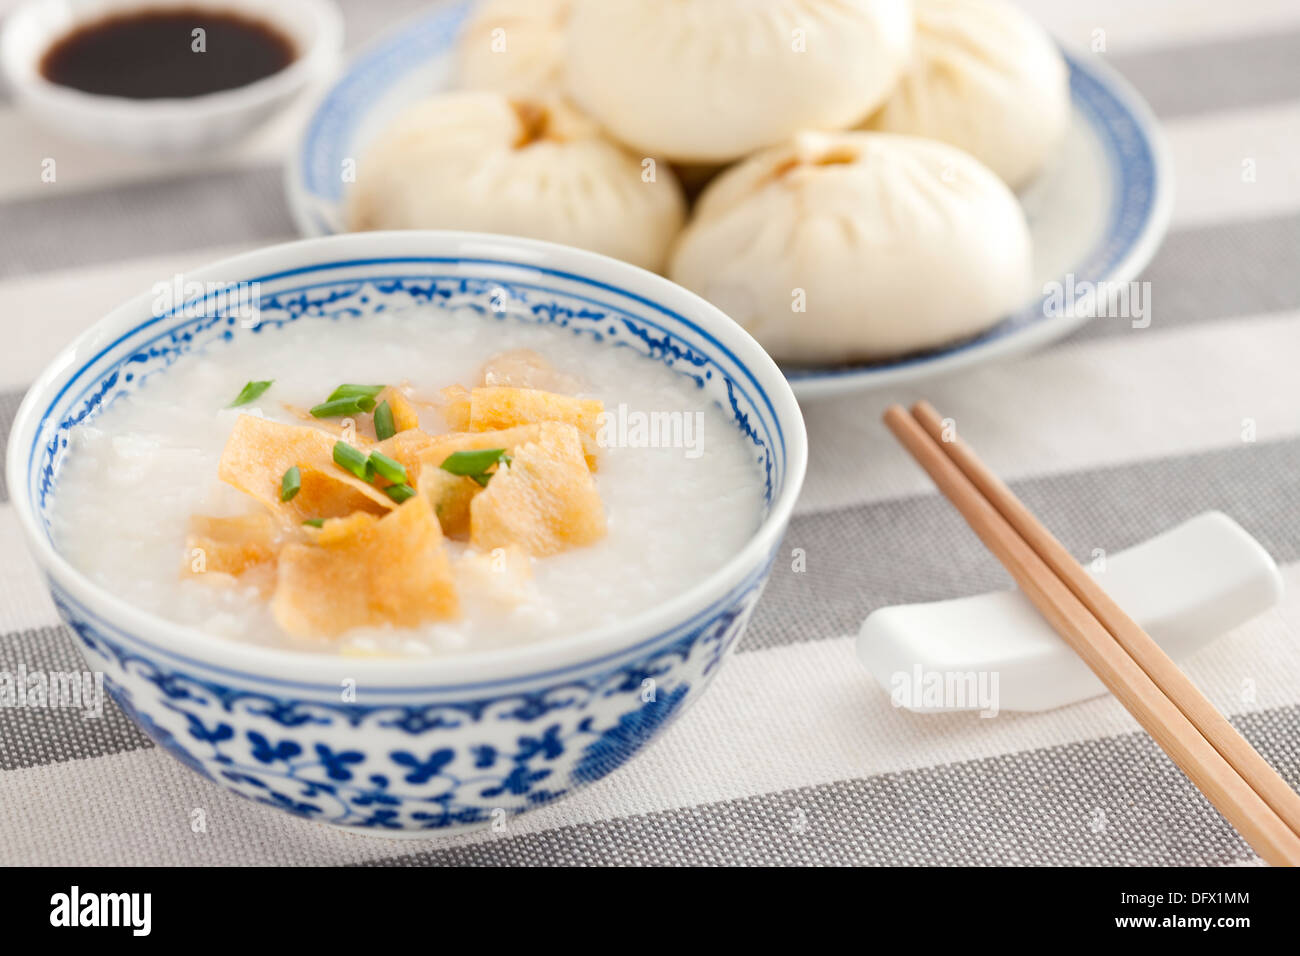 Comida china gachas de arroz y panecillos cocidos Foto de stock